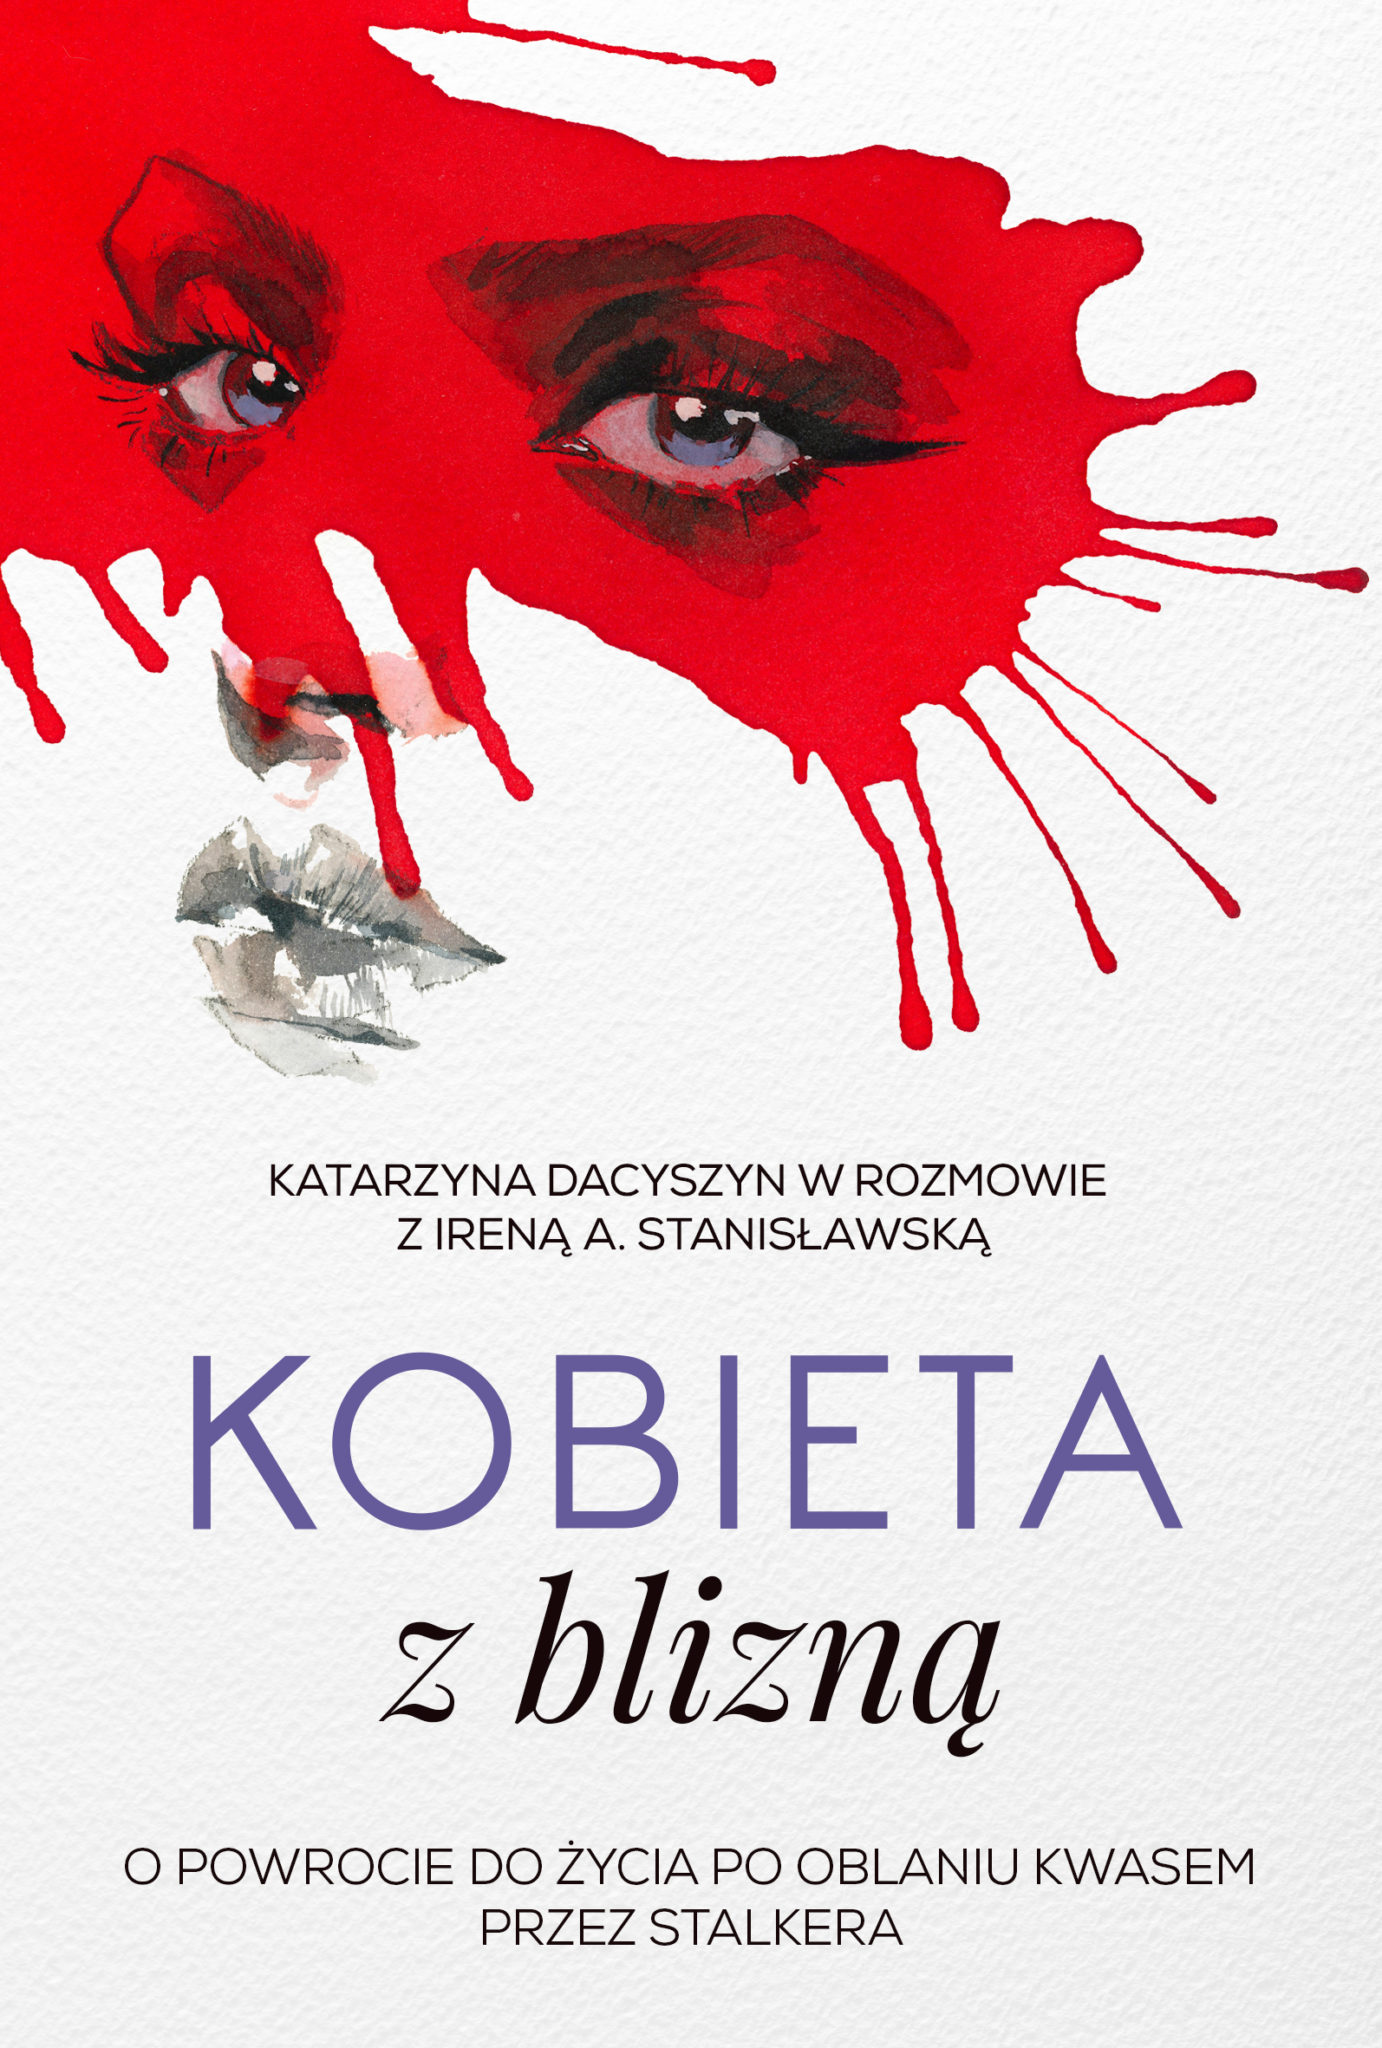 Kobieta z blizną front Po ataku stalkera stała się wzorem dla kobiet w całej Polsce. Historia Katarzyny Dacyszyn w książce „Kobieta z blizną” [FRAGMENTY]